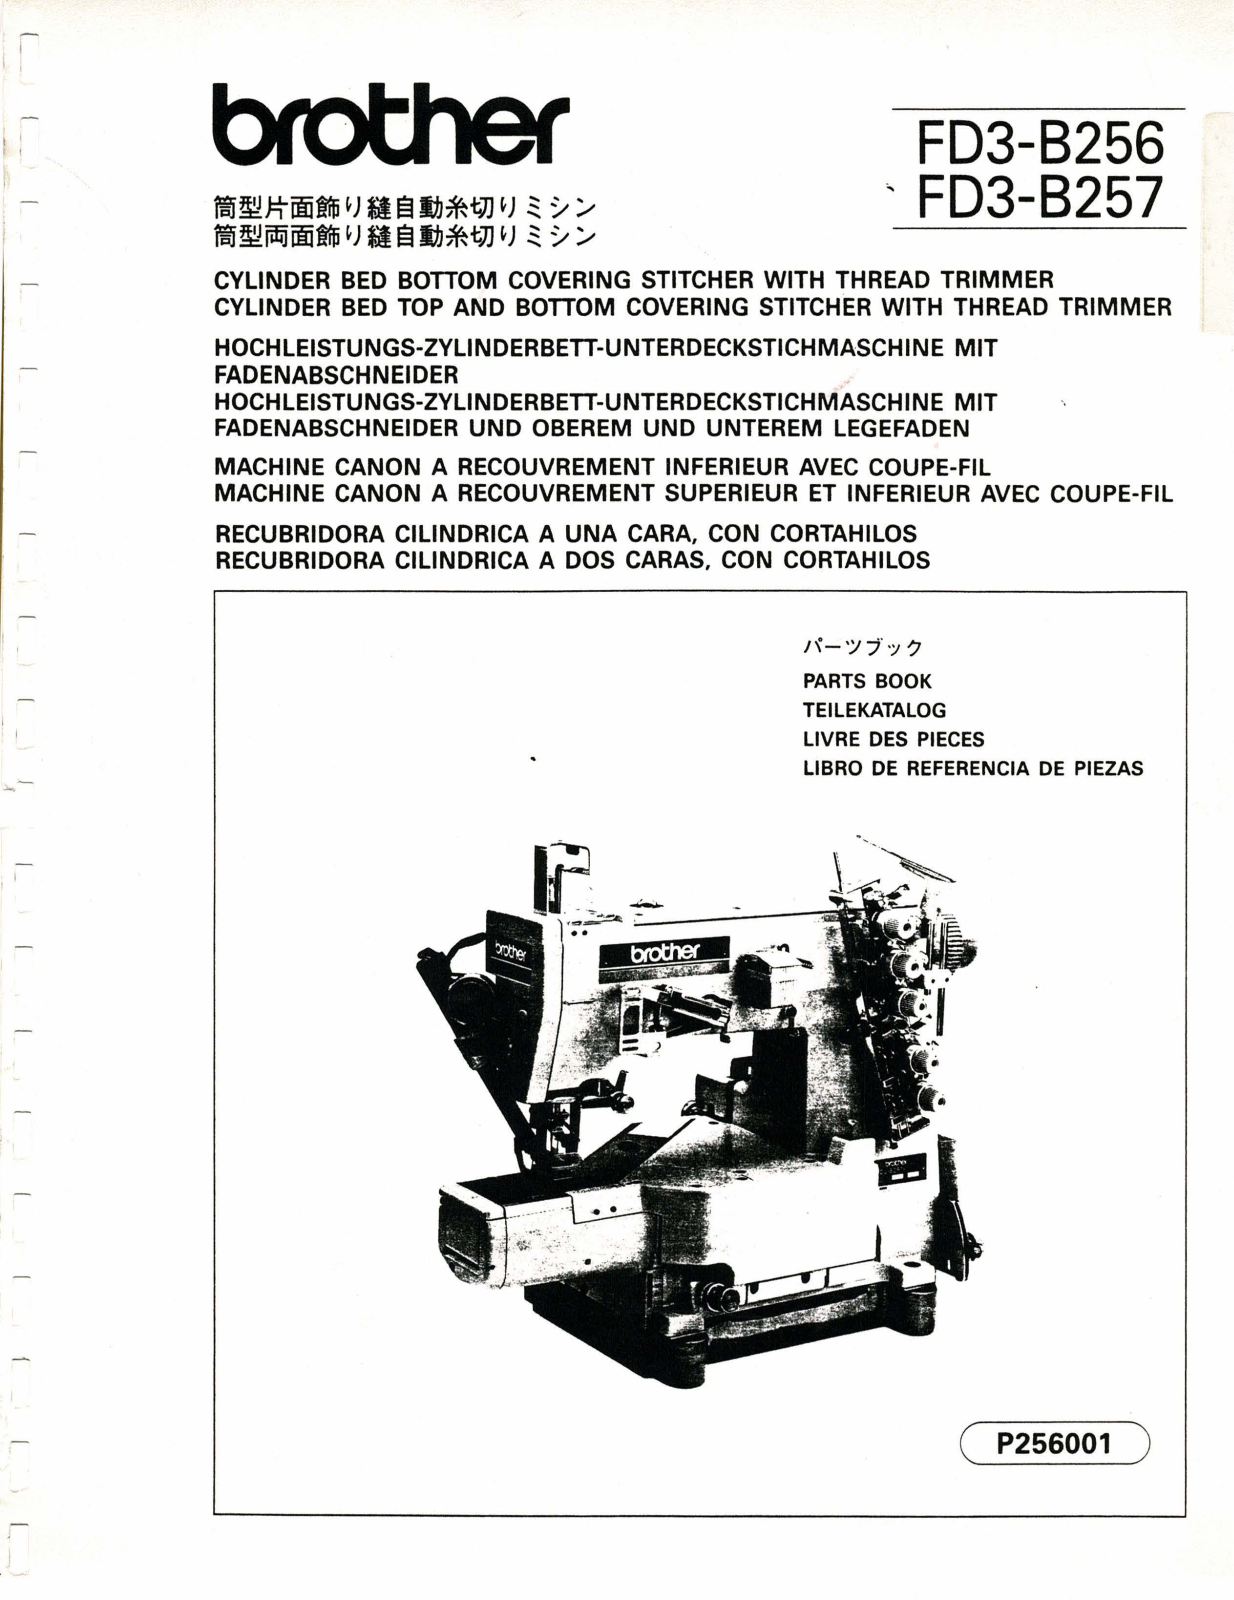 Brother FD3-B256, FD3-B257 Manual